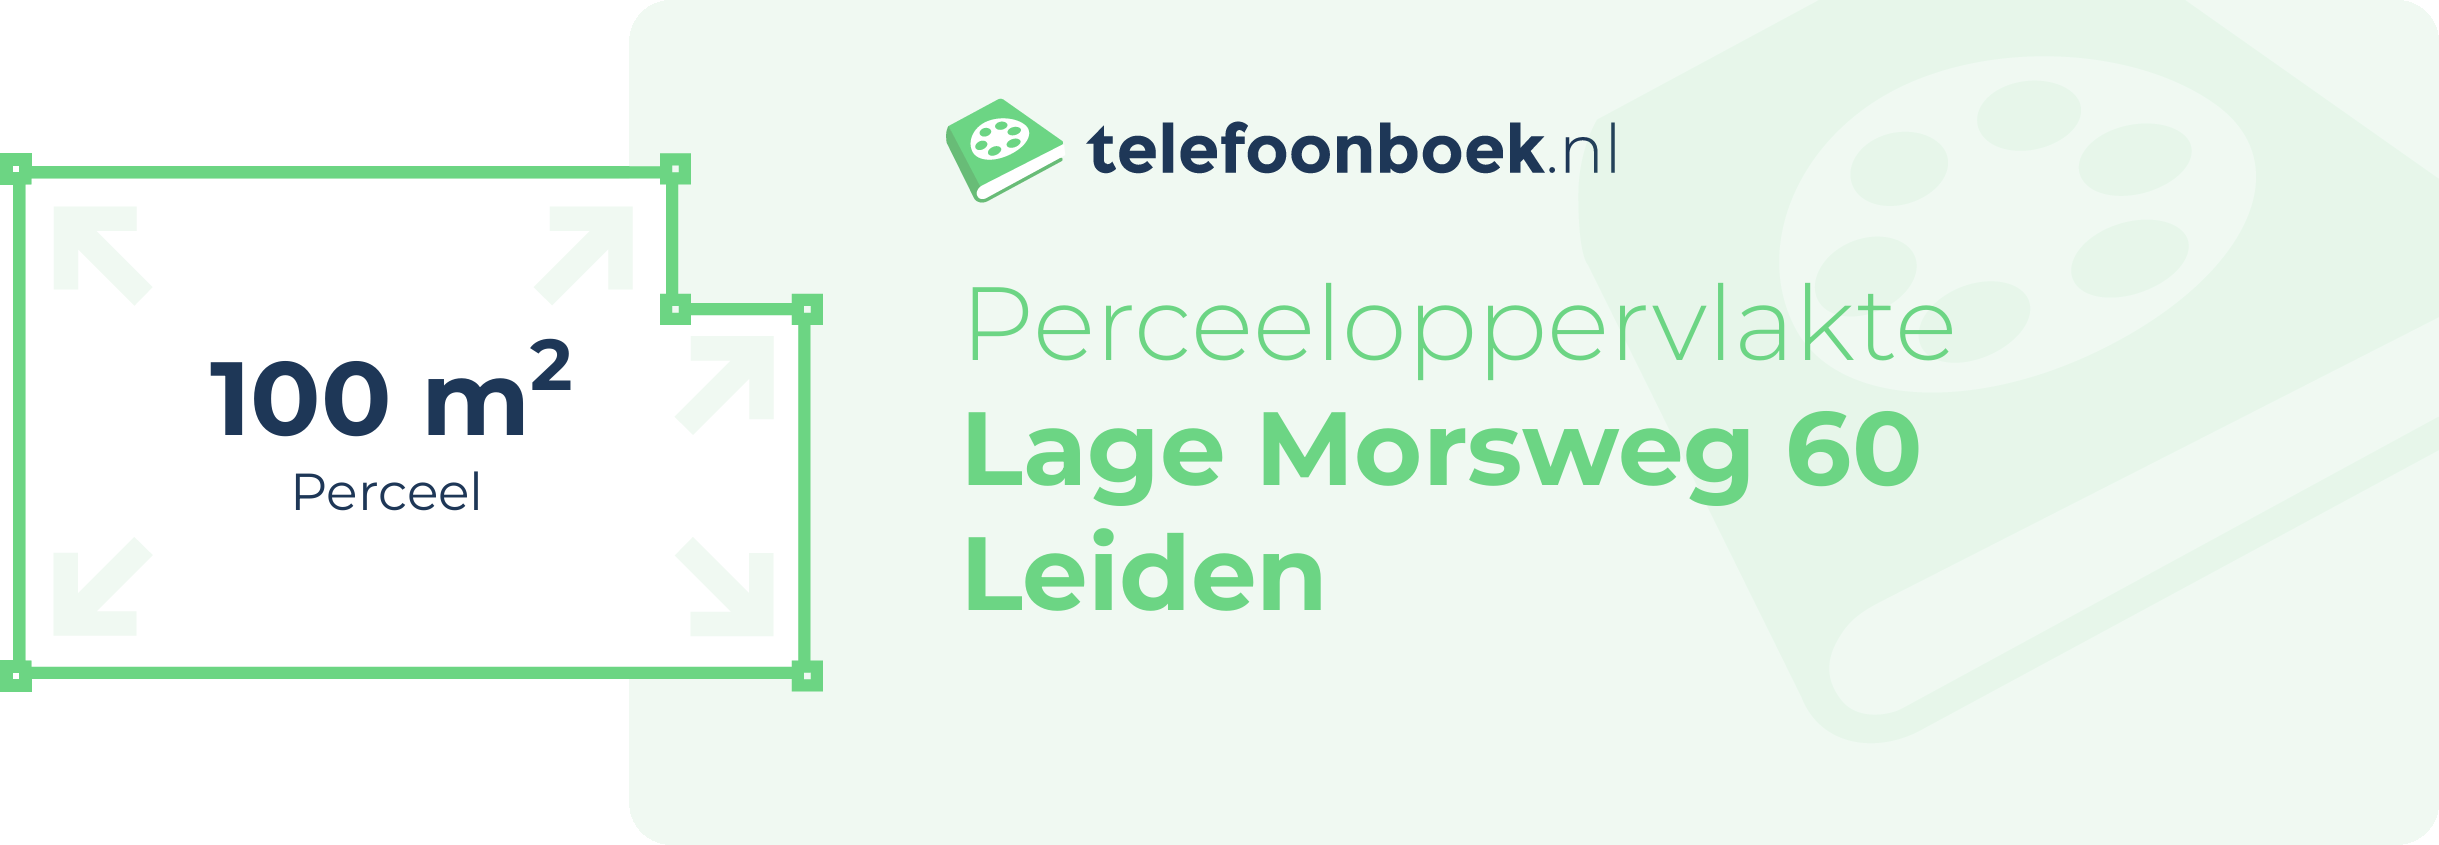 Perceeloppervlakte Lage Morsweg 60 Leiden